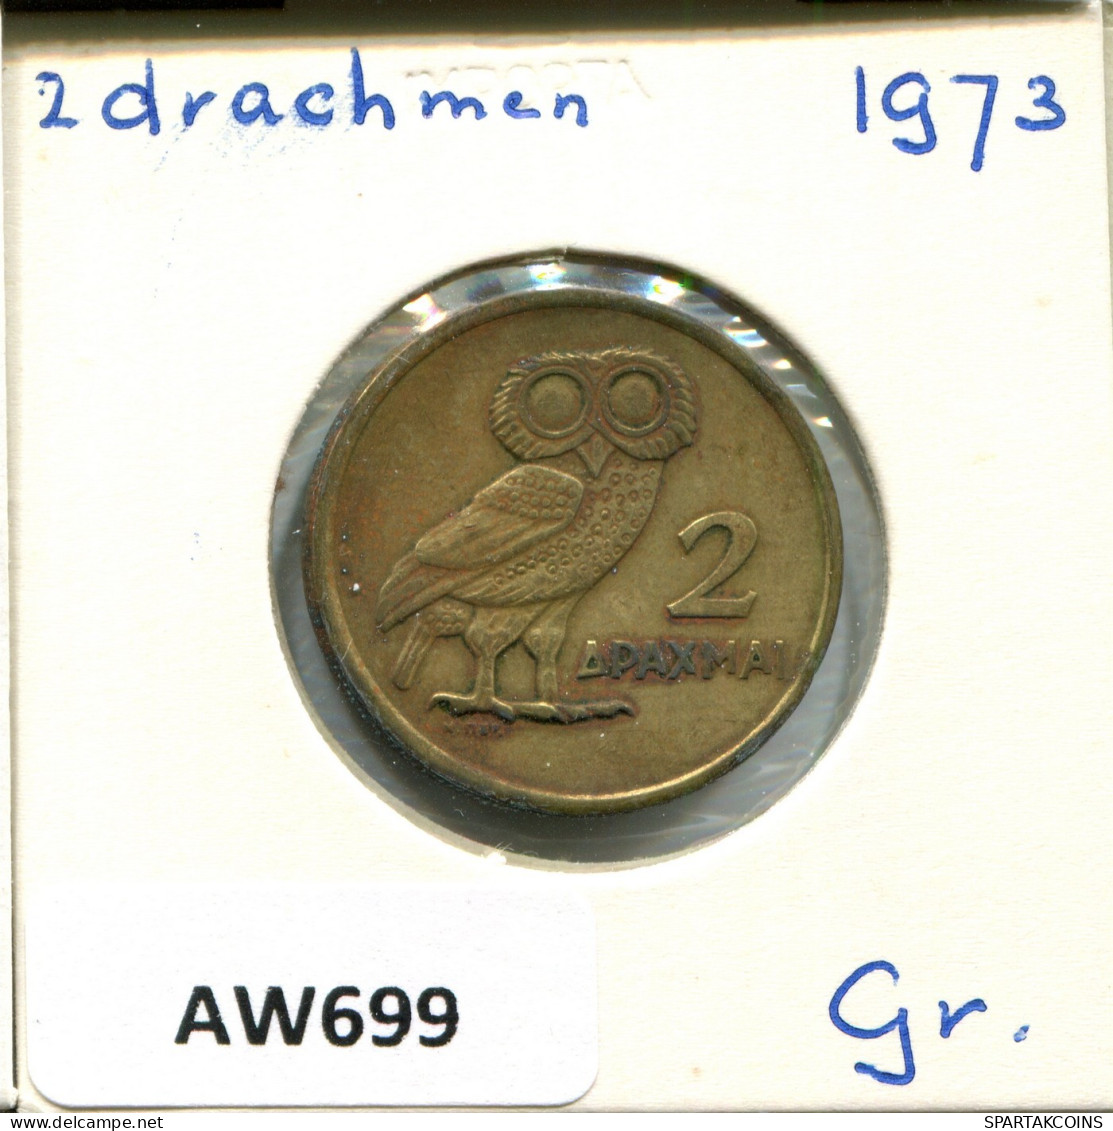 2 DRACHMES 1973 GREECE Coin #AW699.U.A - Greece